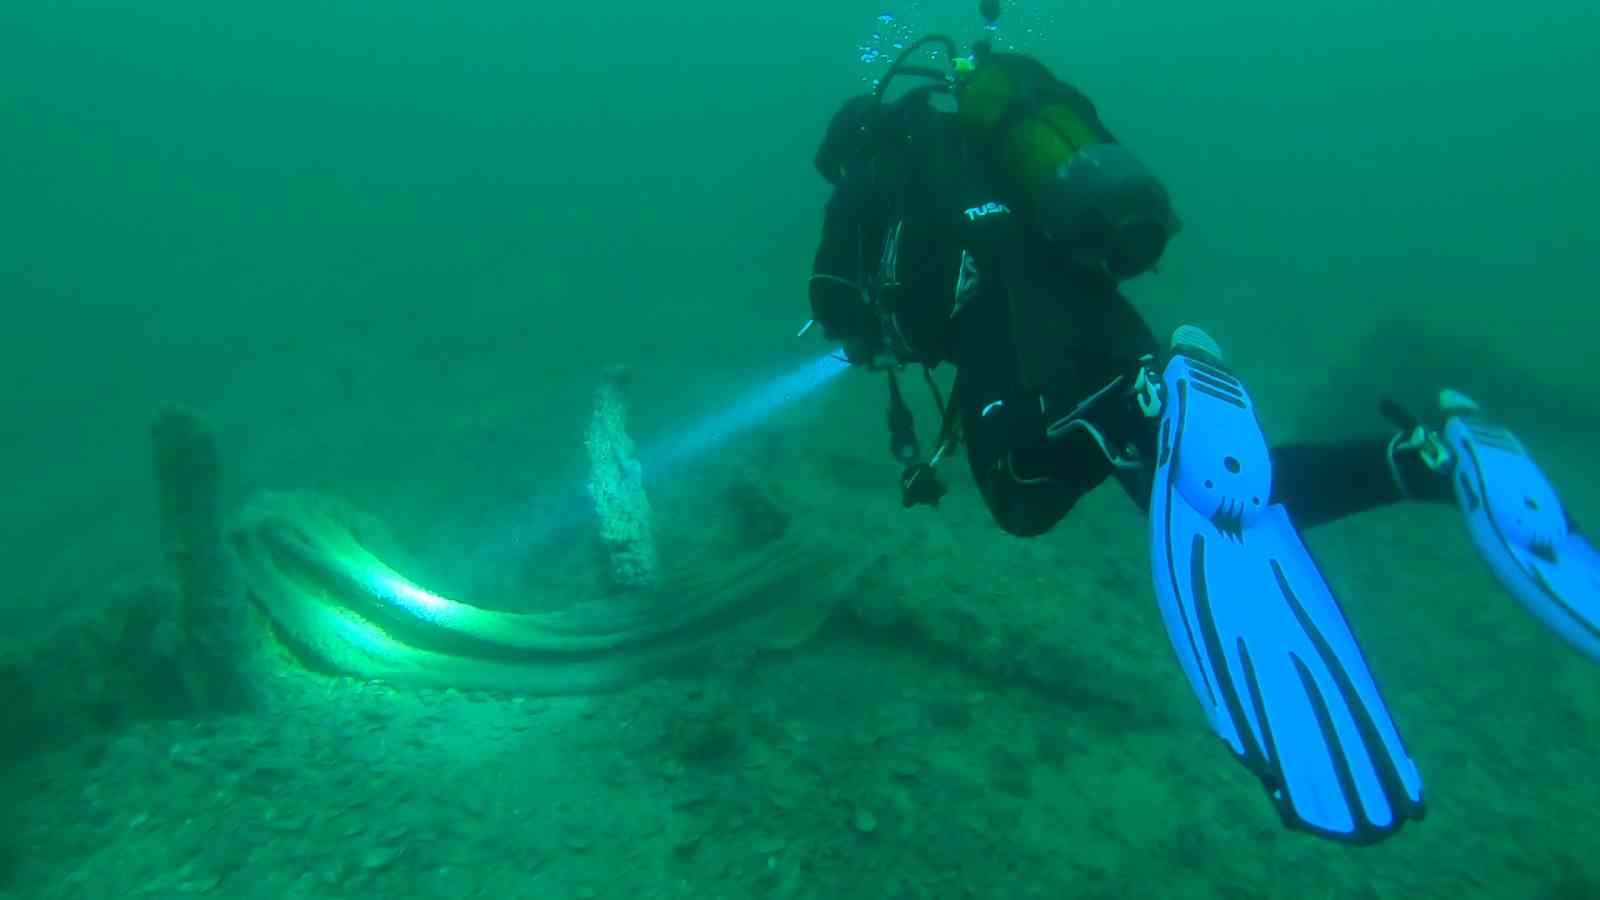 Denizden 250 kilogram ağırlığında hayalet ağ çıkarıldı #canakkale